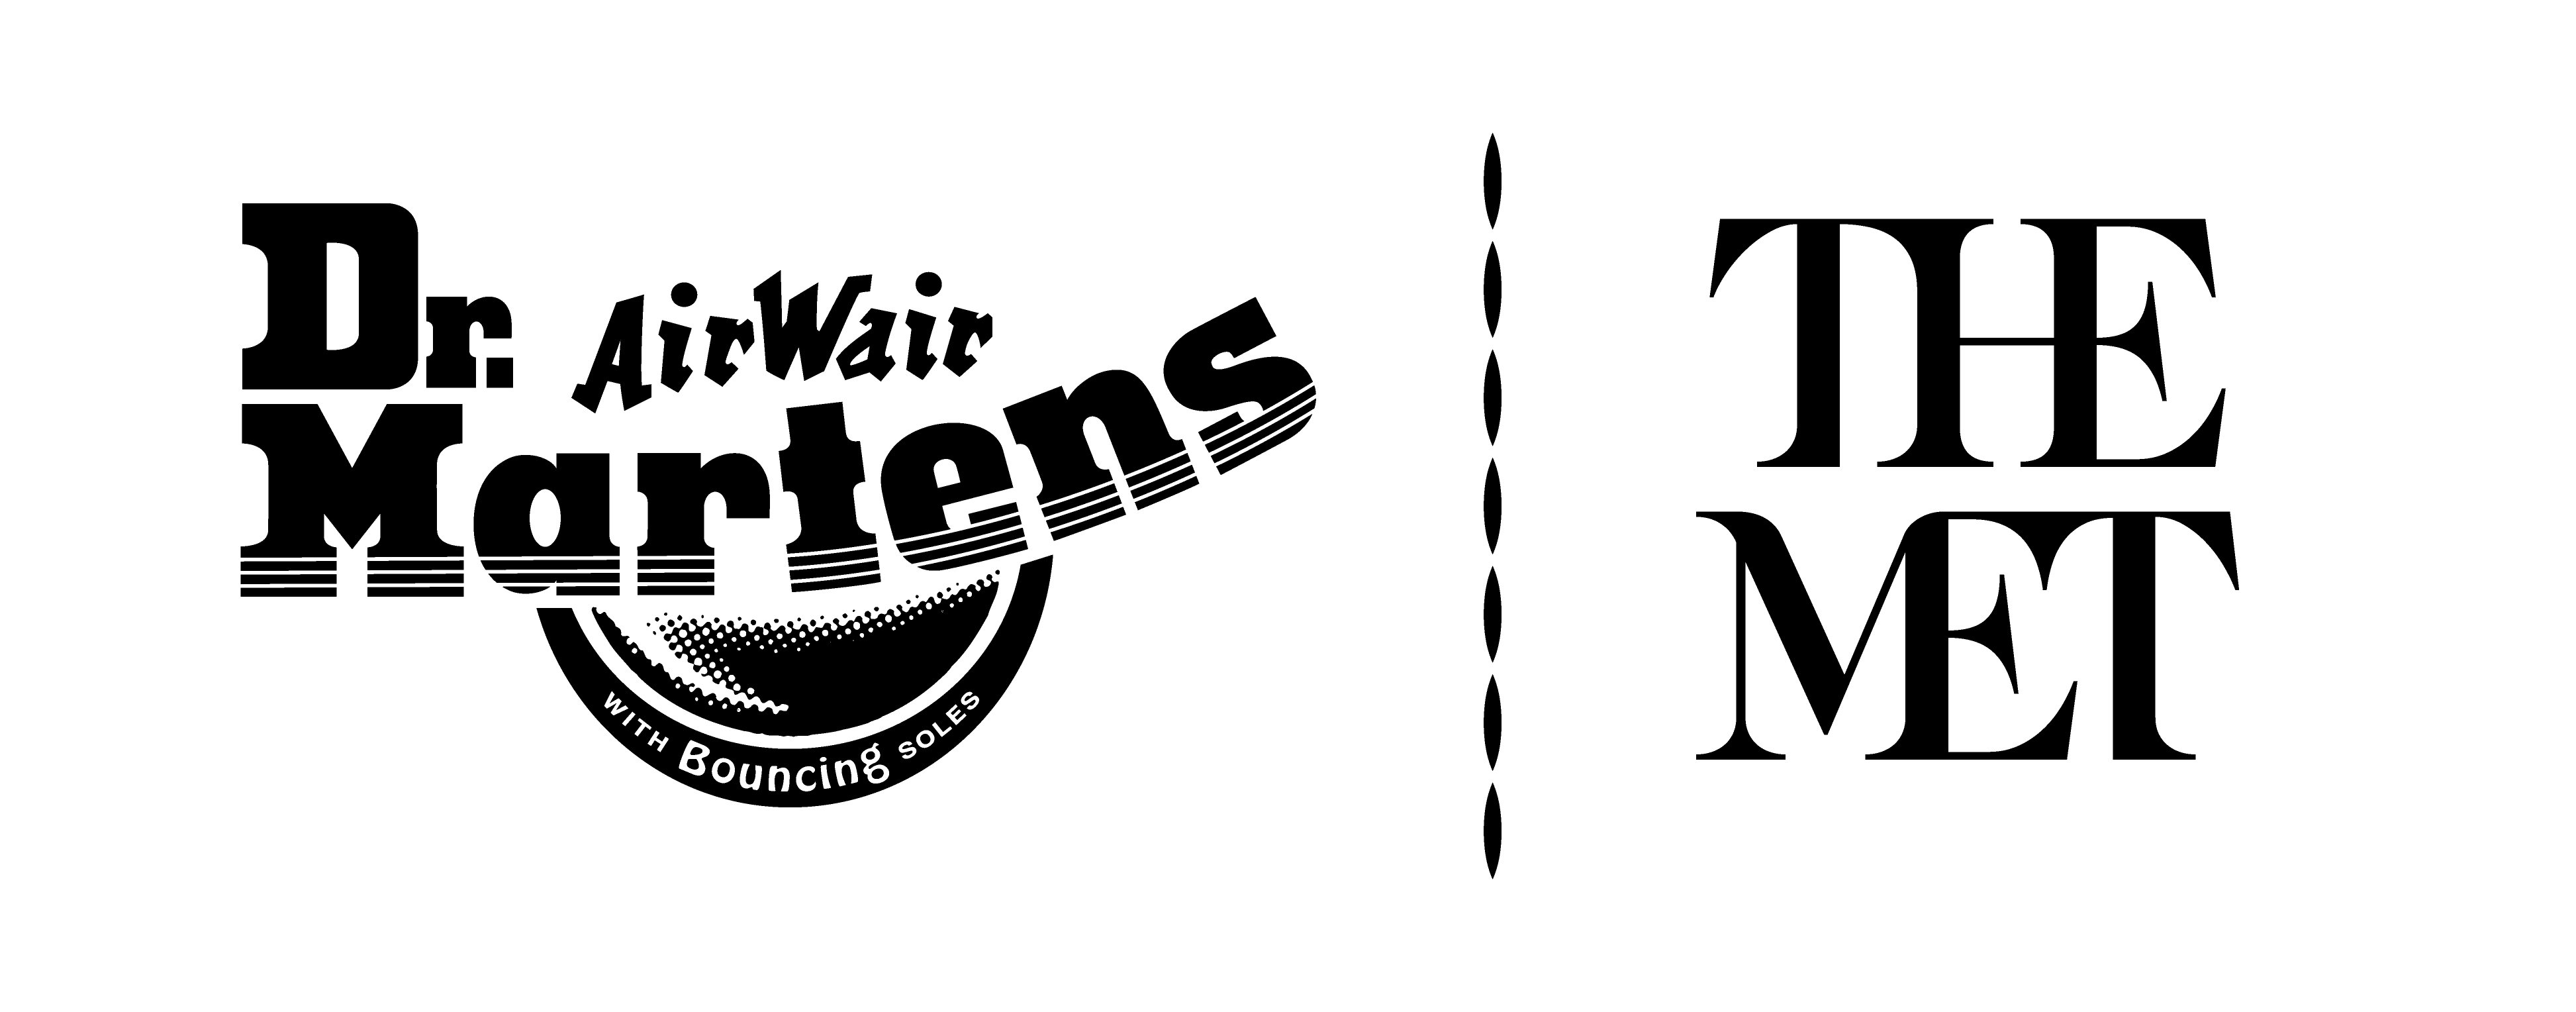 Dr. Martens | The Met